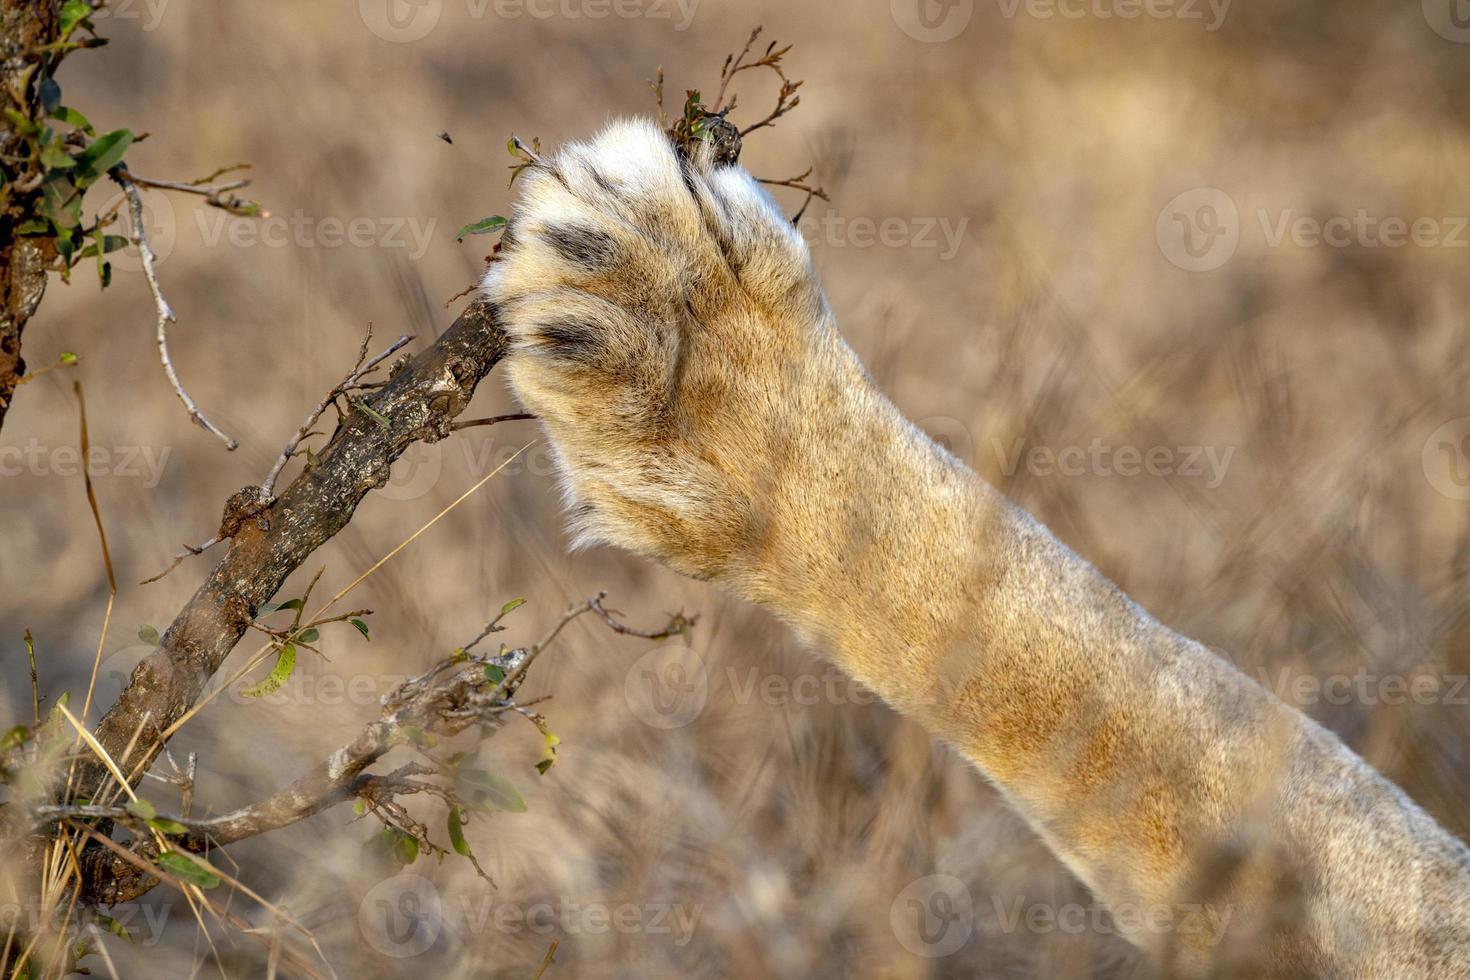 poot van mannetje leeuw in Kruger park zuiden Afrika foto